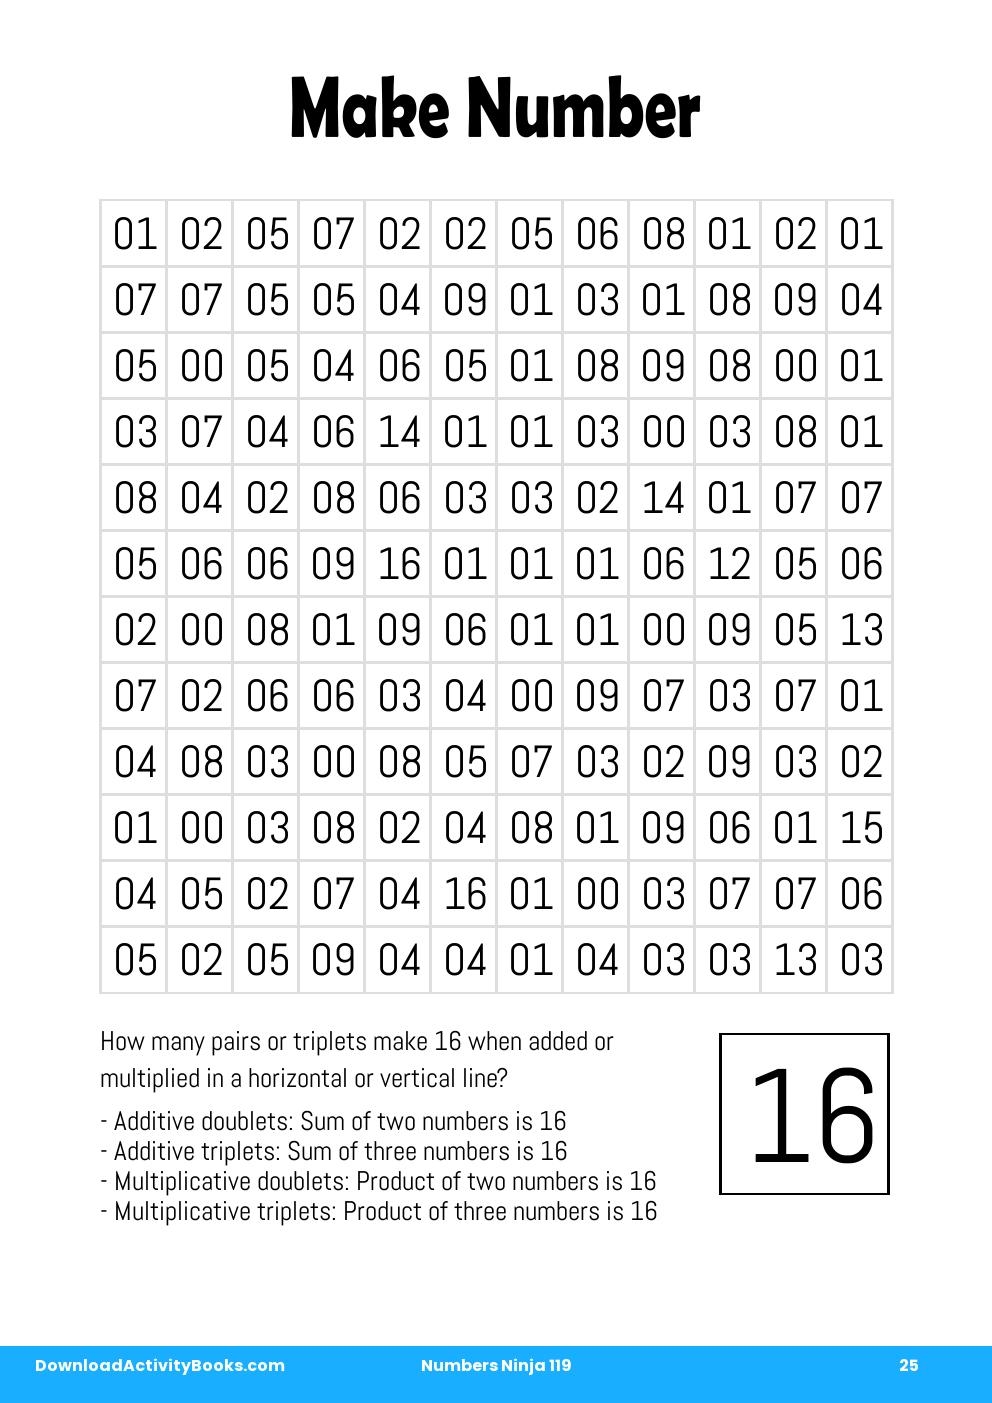 Make Number in Numbers Ninja 119